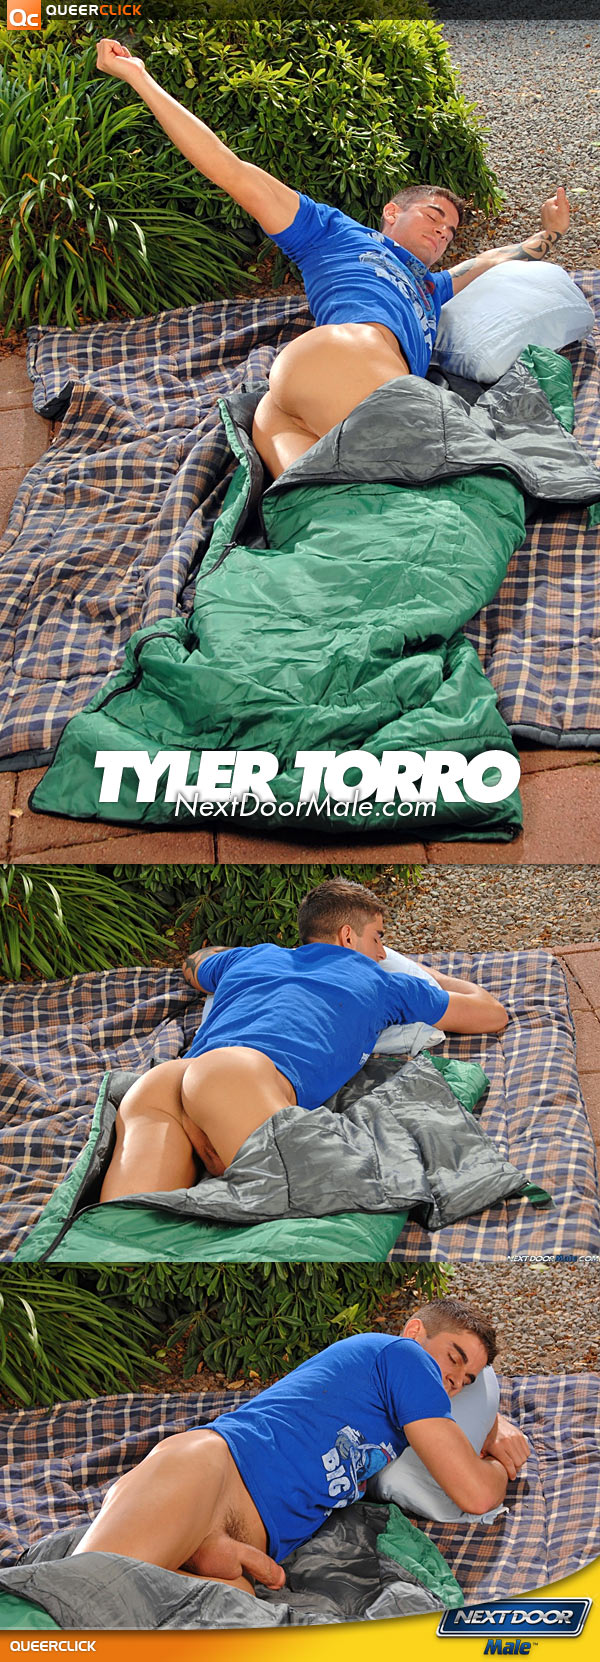 Next Door Male: Tyler Torro